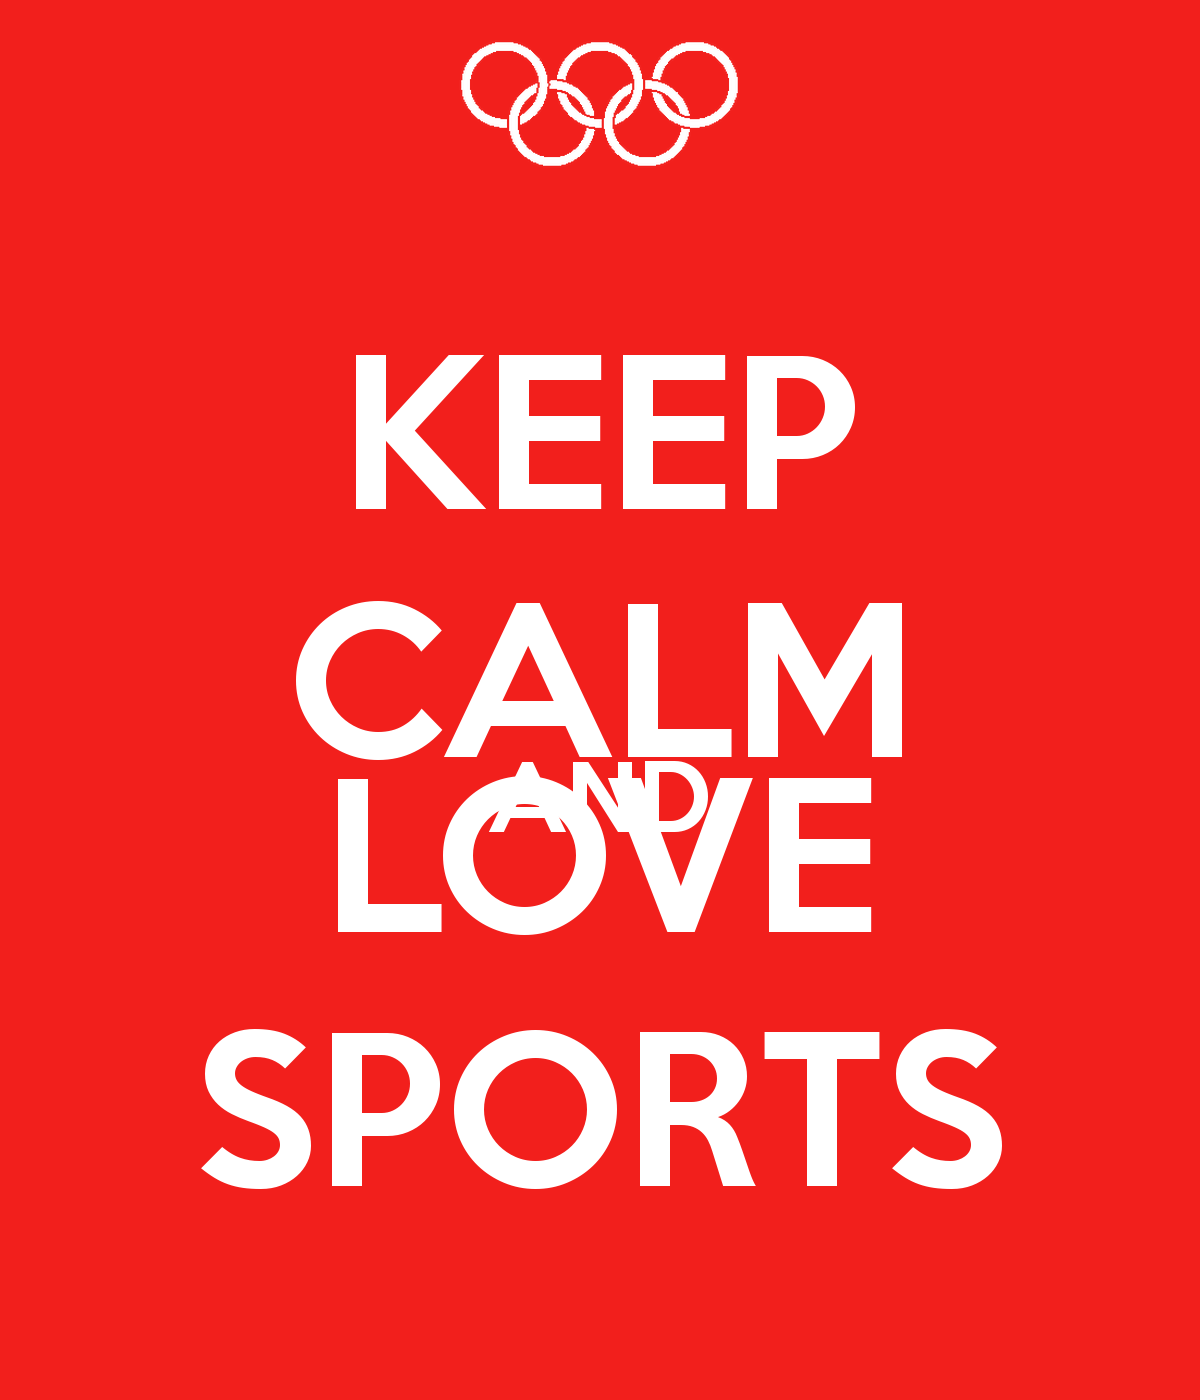 Love Sports Quotes. QuotesGram